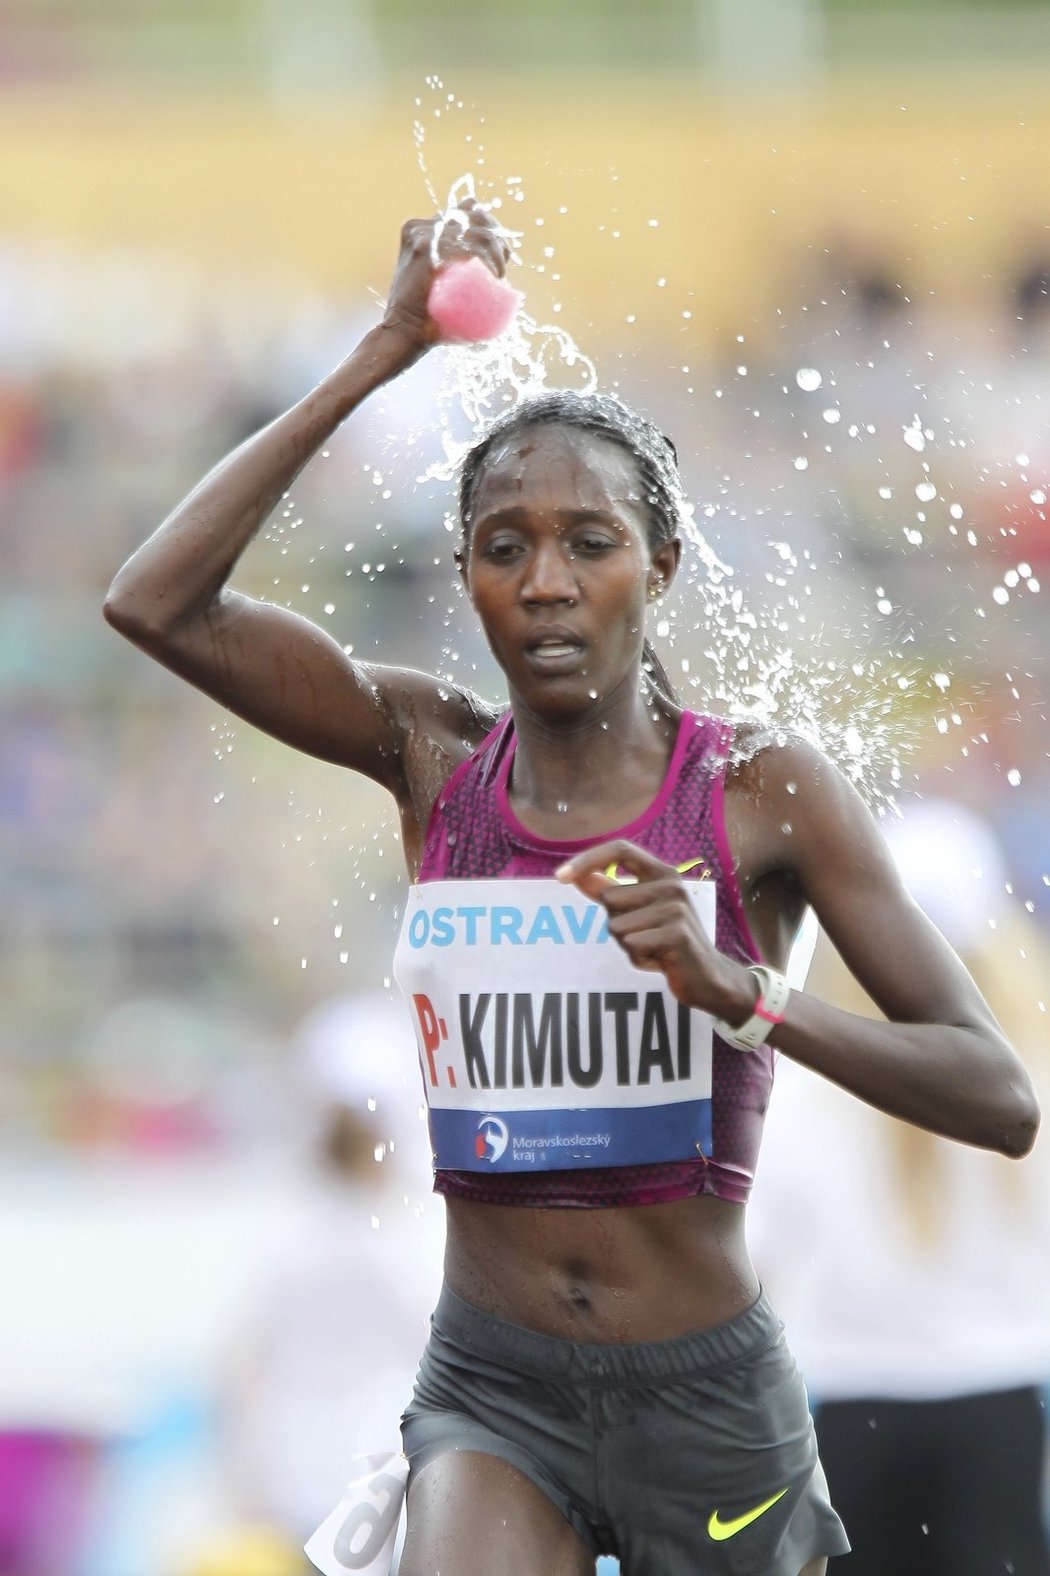 Vítězka závodu v běhu na 20 km Alice Kimutaiová z Keni.